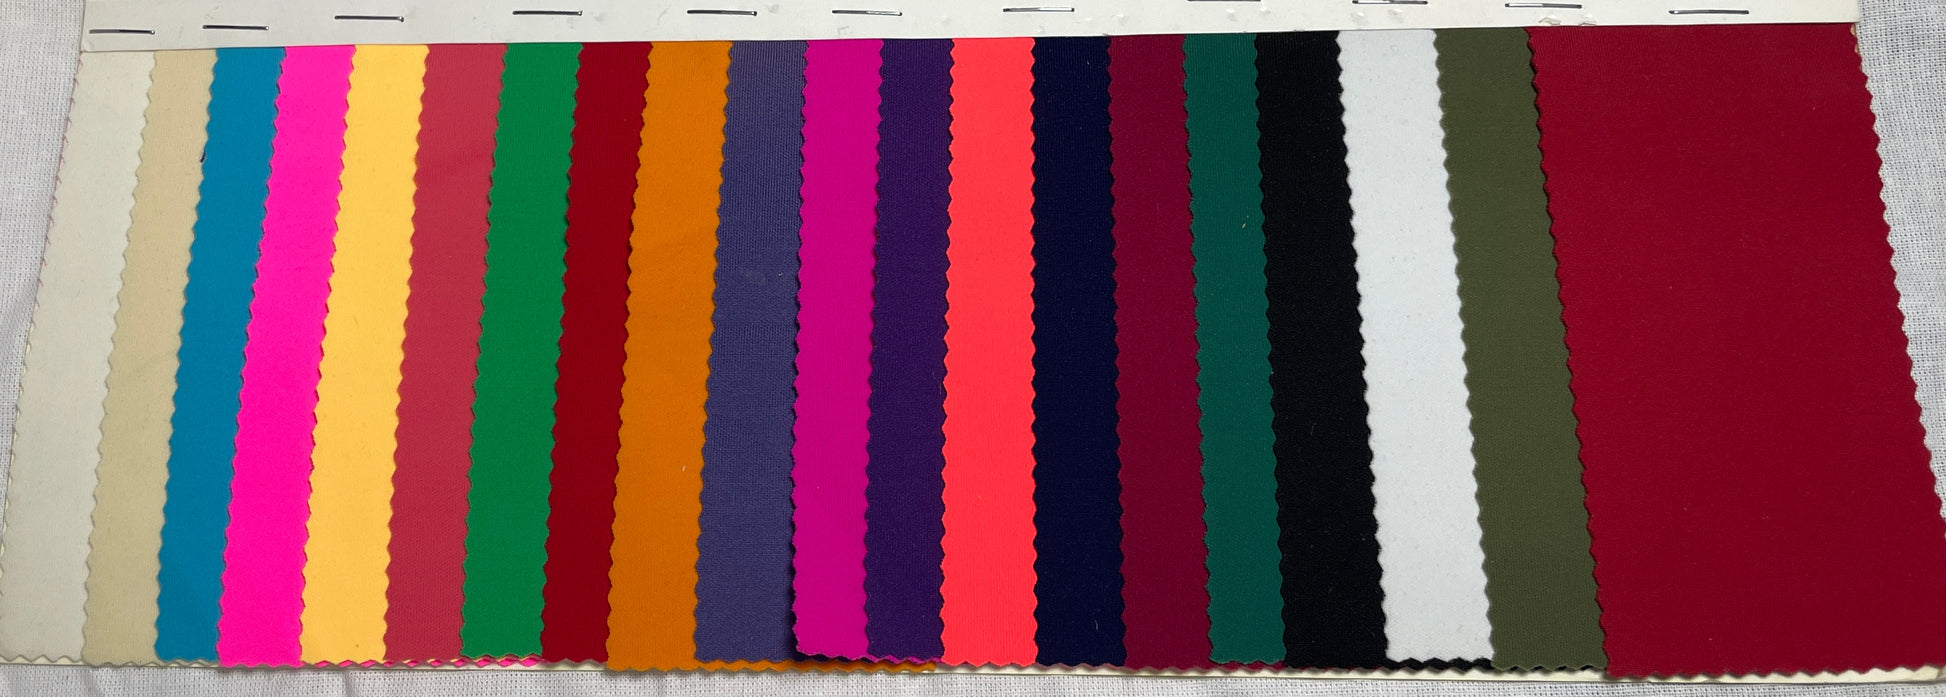 80%Nylon 20% Spandex Knit Fabric For Activewear-Double Side Use - Natasha Fabric